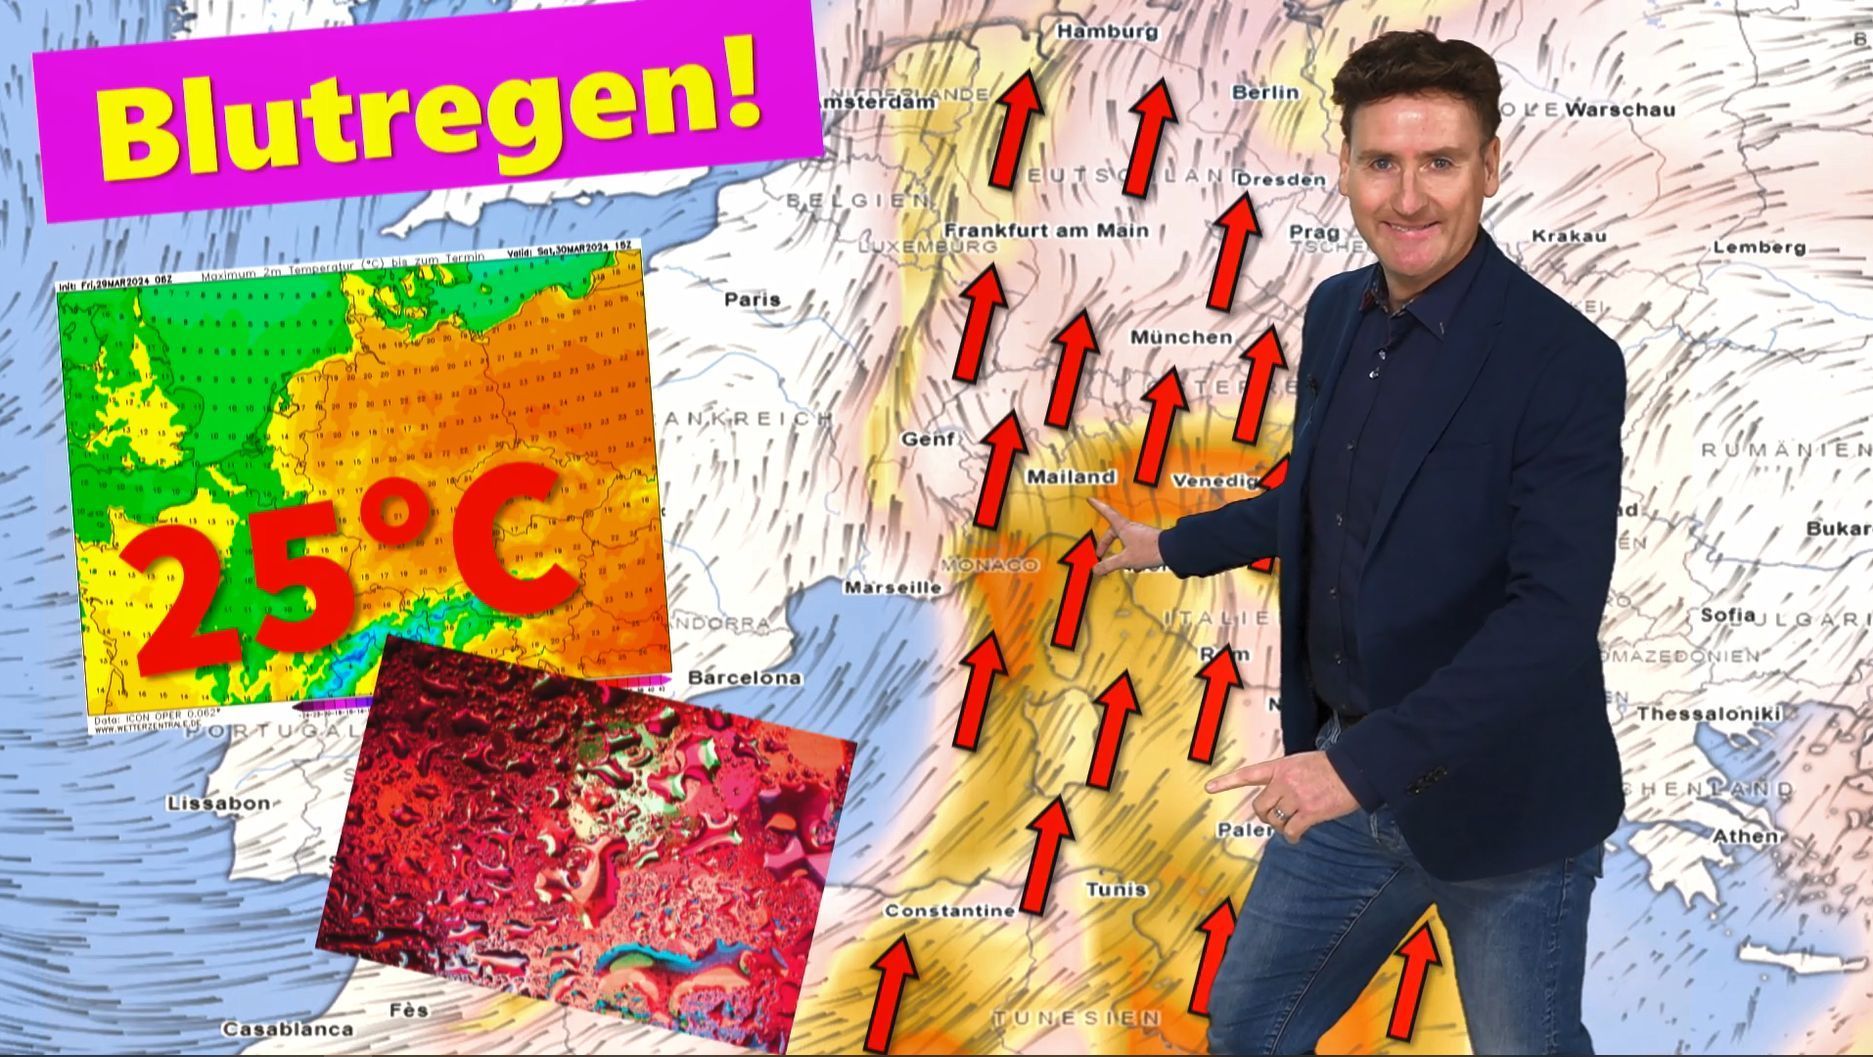 Gruselwetter an Ostern! Blutregen über Deutschland, Karsamstag bis 25°C! Alles hängt vom Saharastaub ab!